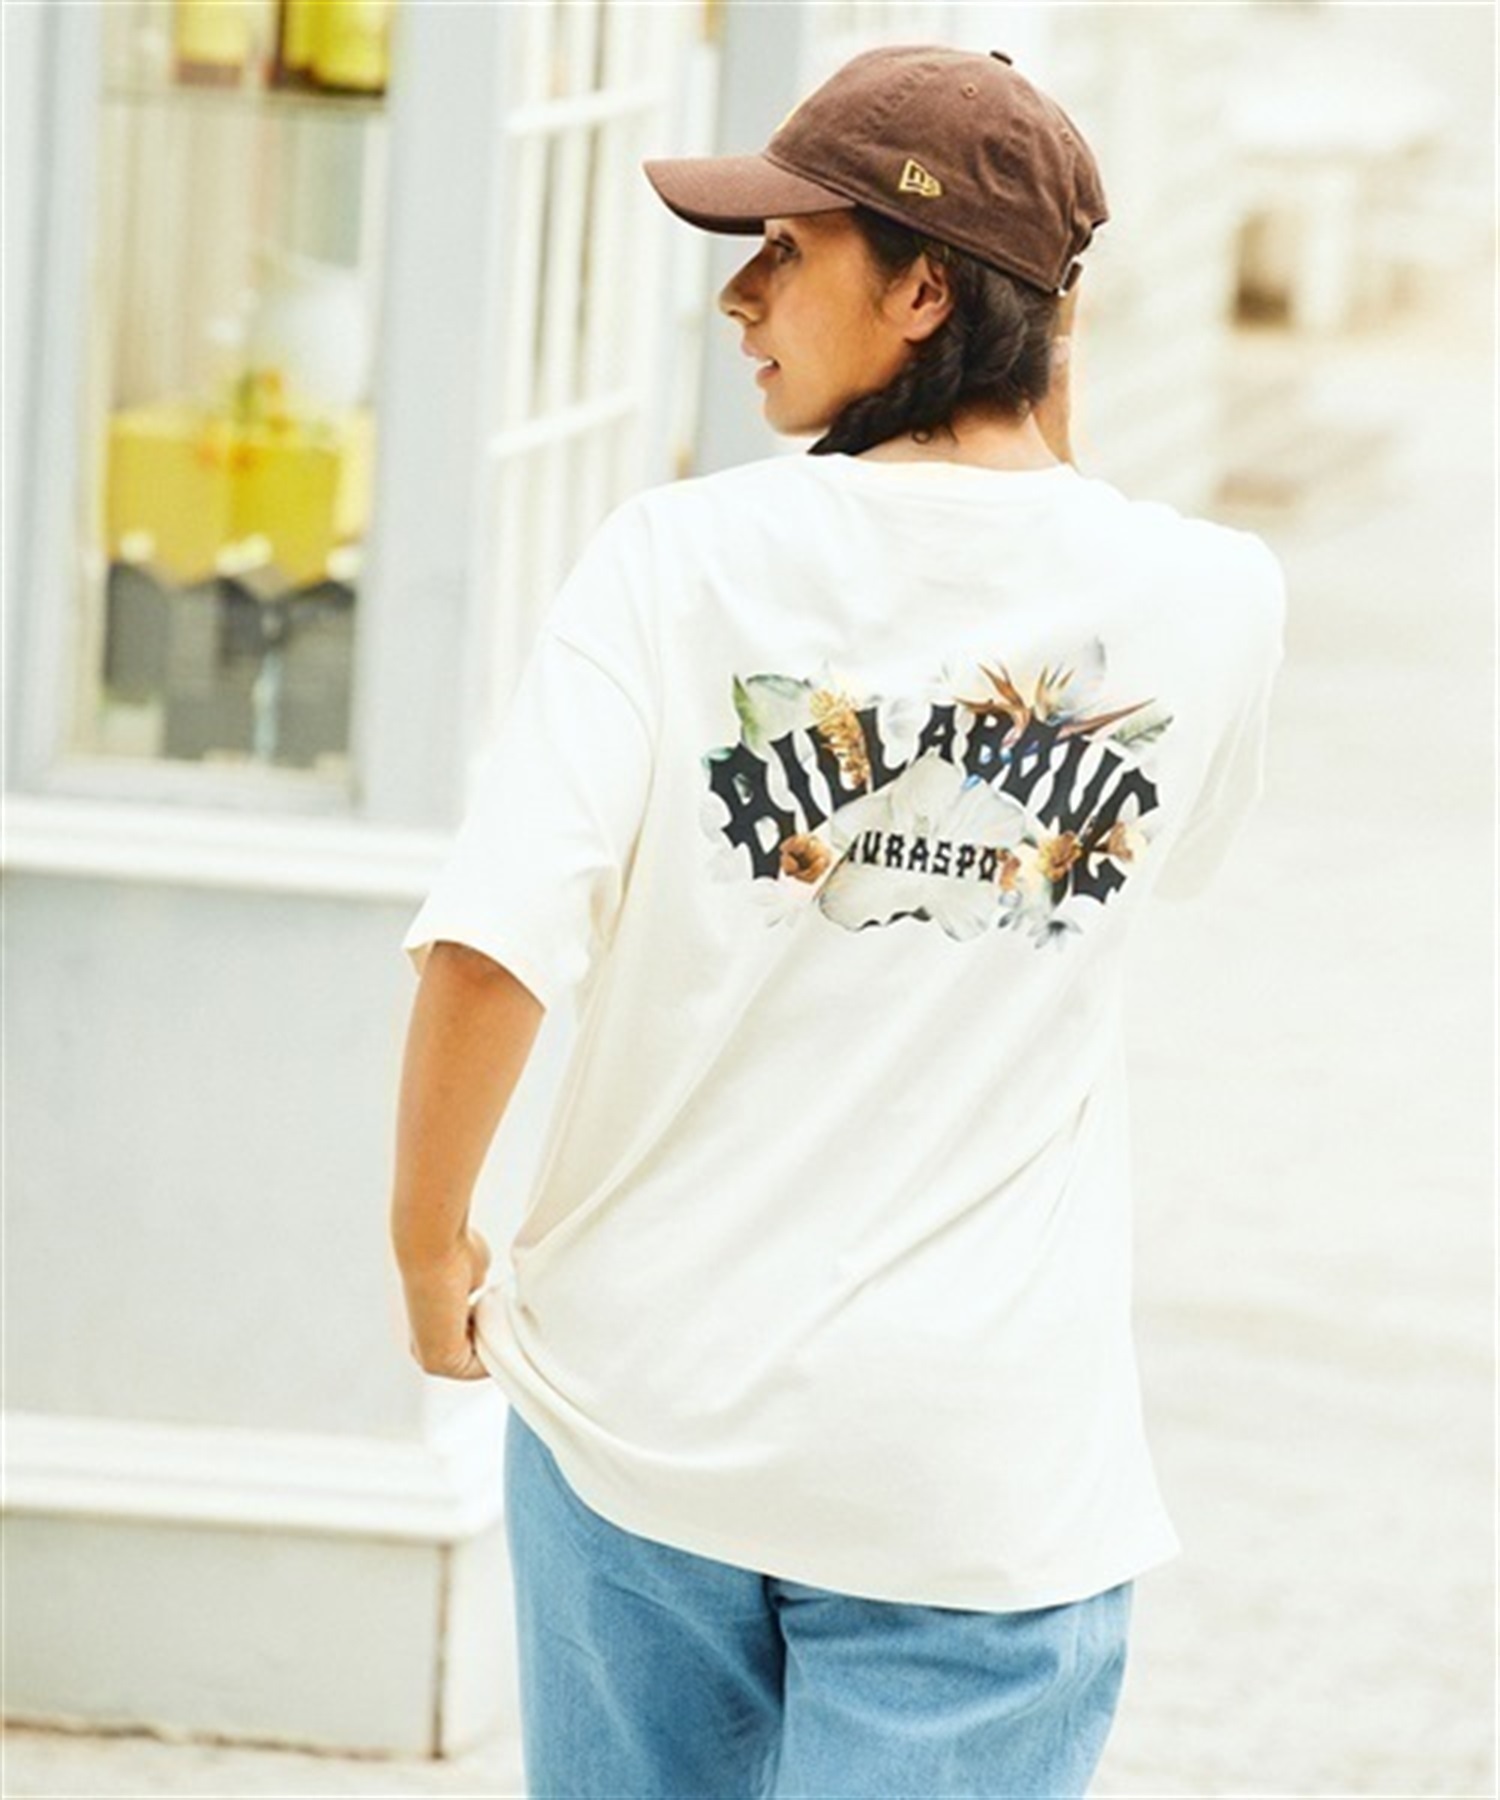 ムラサキスポーツ×BILLABONG/ビラボン×KAMEA HADAR/カメア・ハーダー ユニフォームプロジェクト BD013-245 半袖Tシャツ レディース(OFB-M)